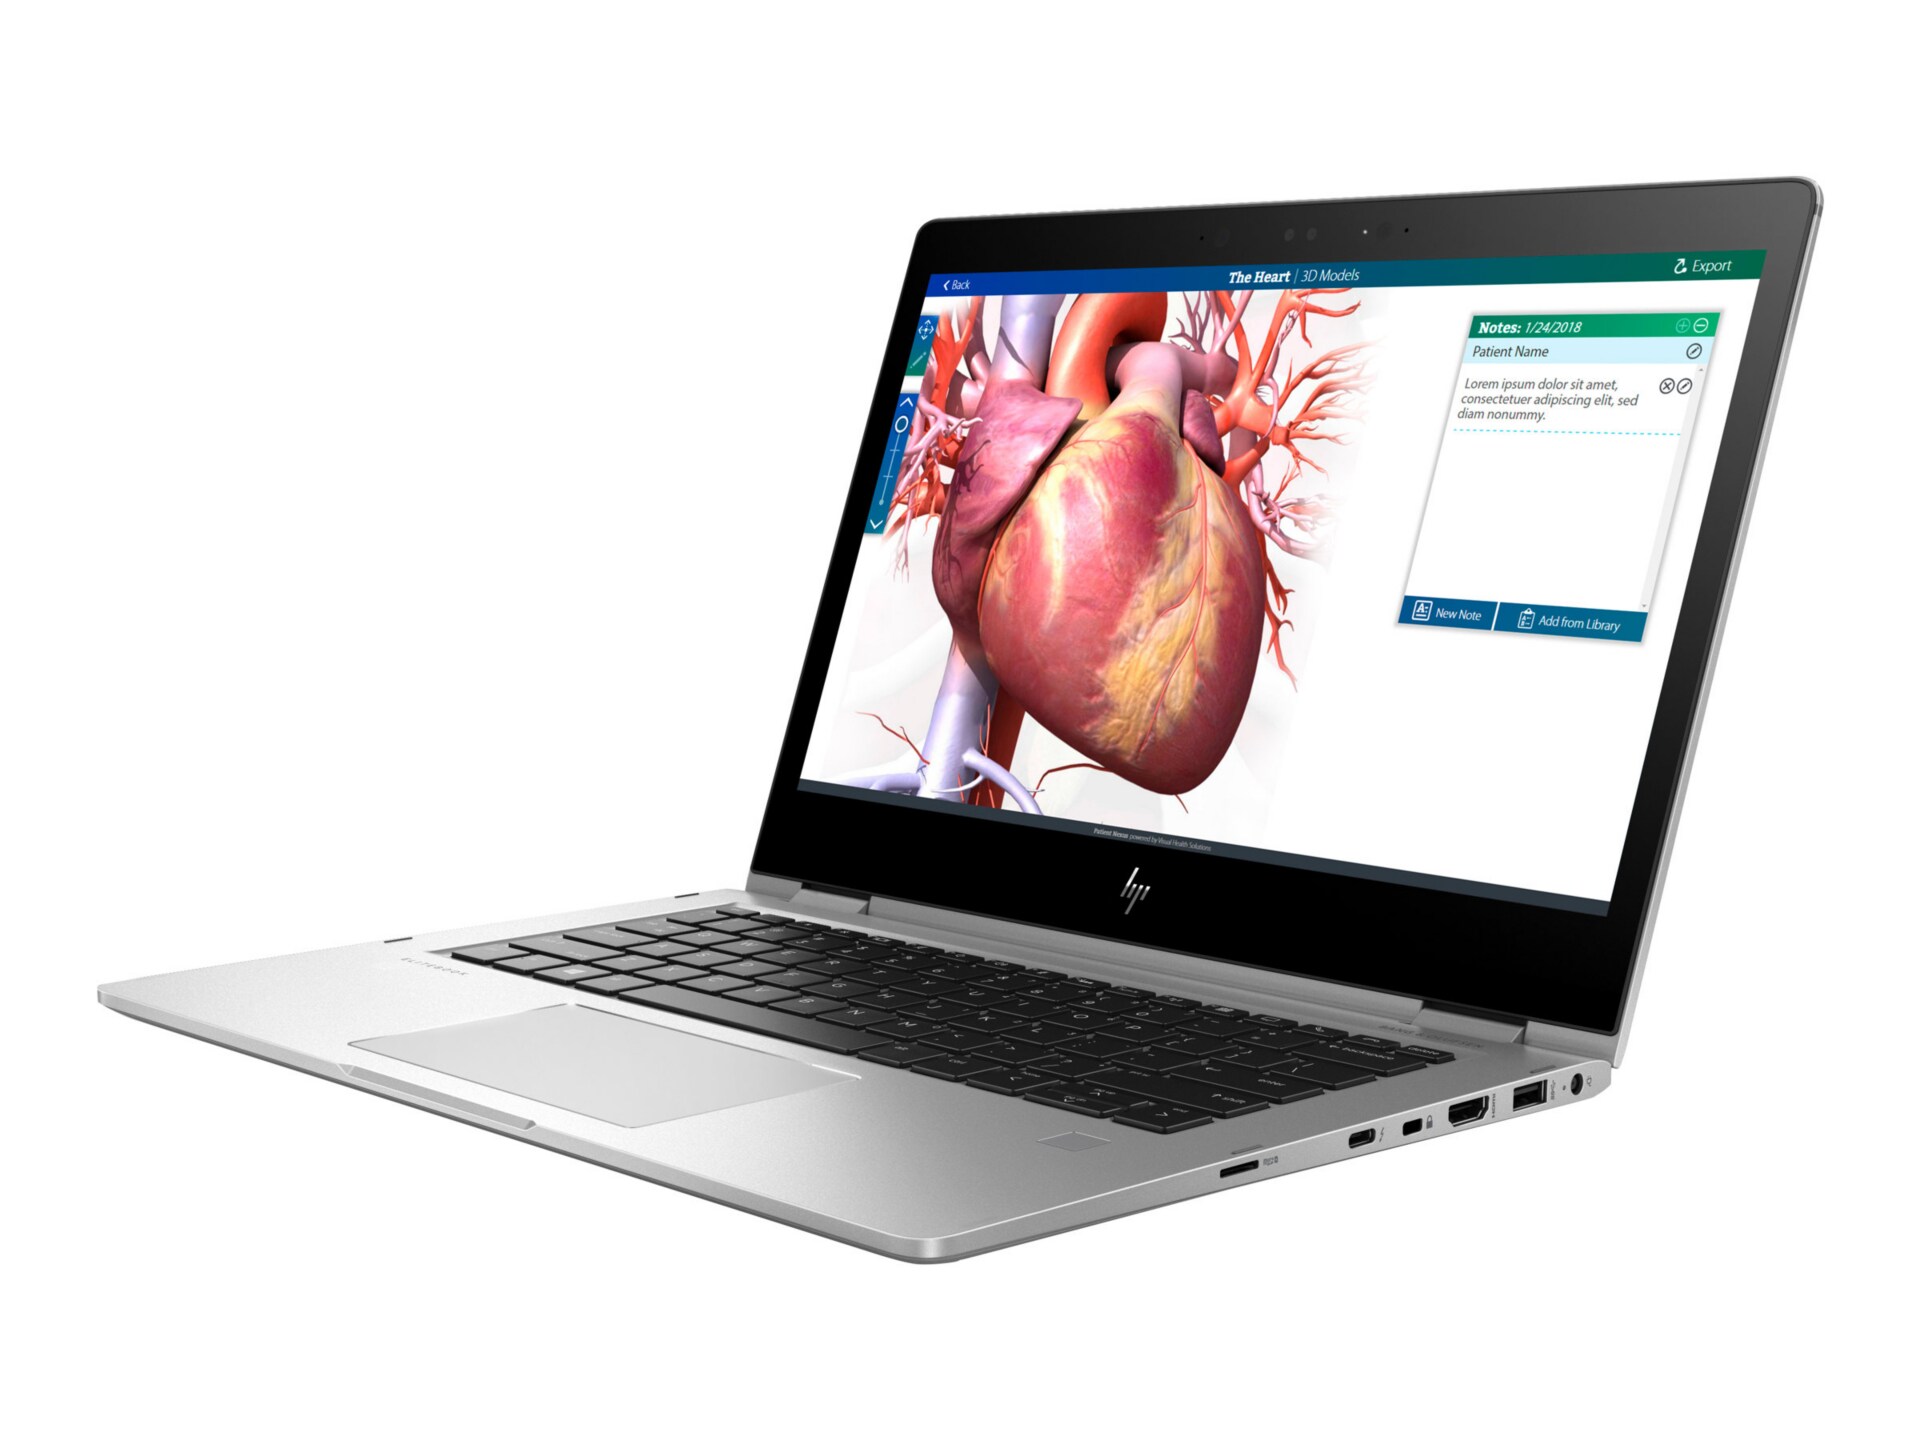 HP EliteBook x360 1030 G2 Notebook - 13.3" - Core i5 7200U - 8 GB RAM - 128